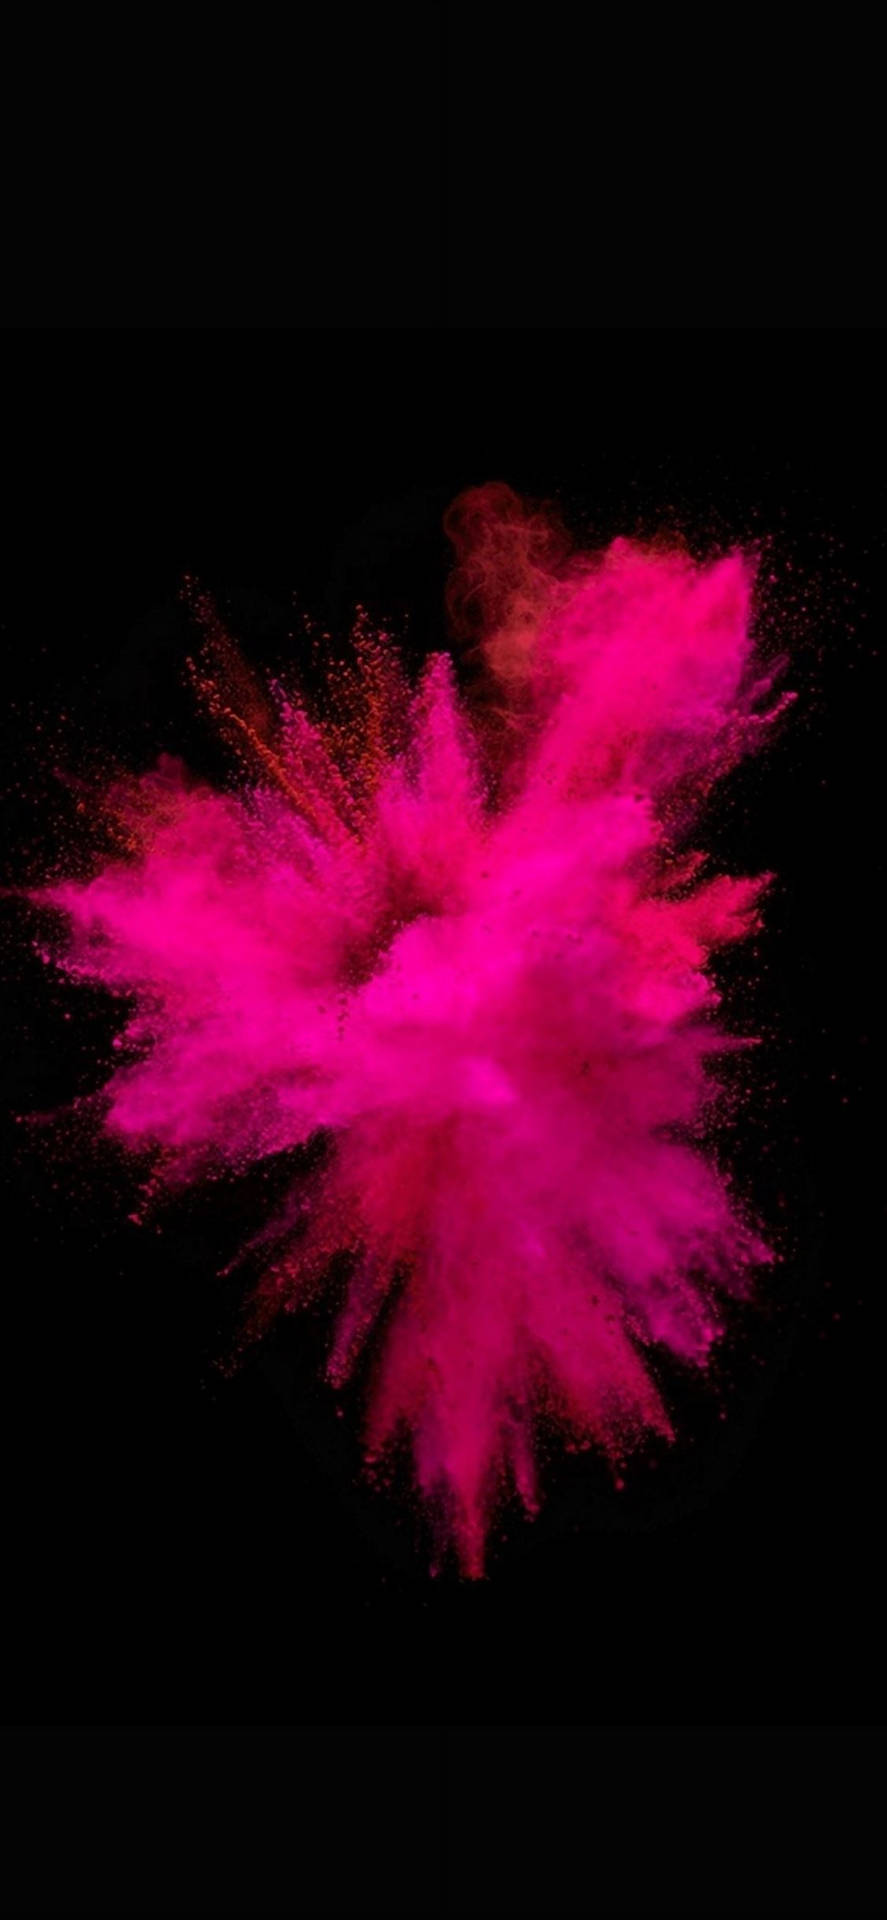 Pinkerpulverexplosionshintergrund Für Iphone (dunkel) Wallpaper